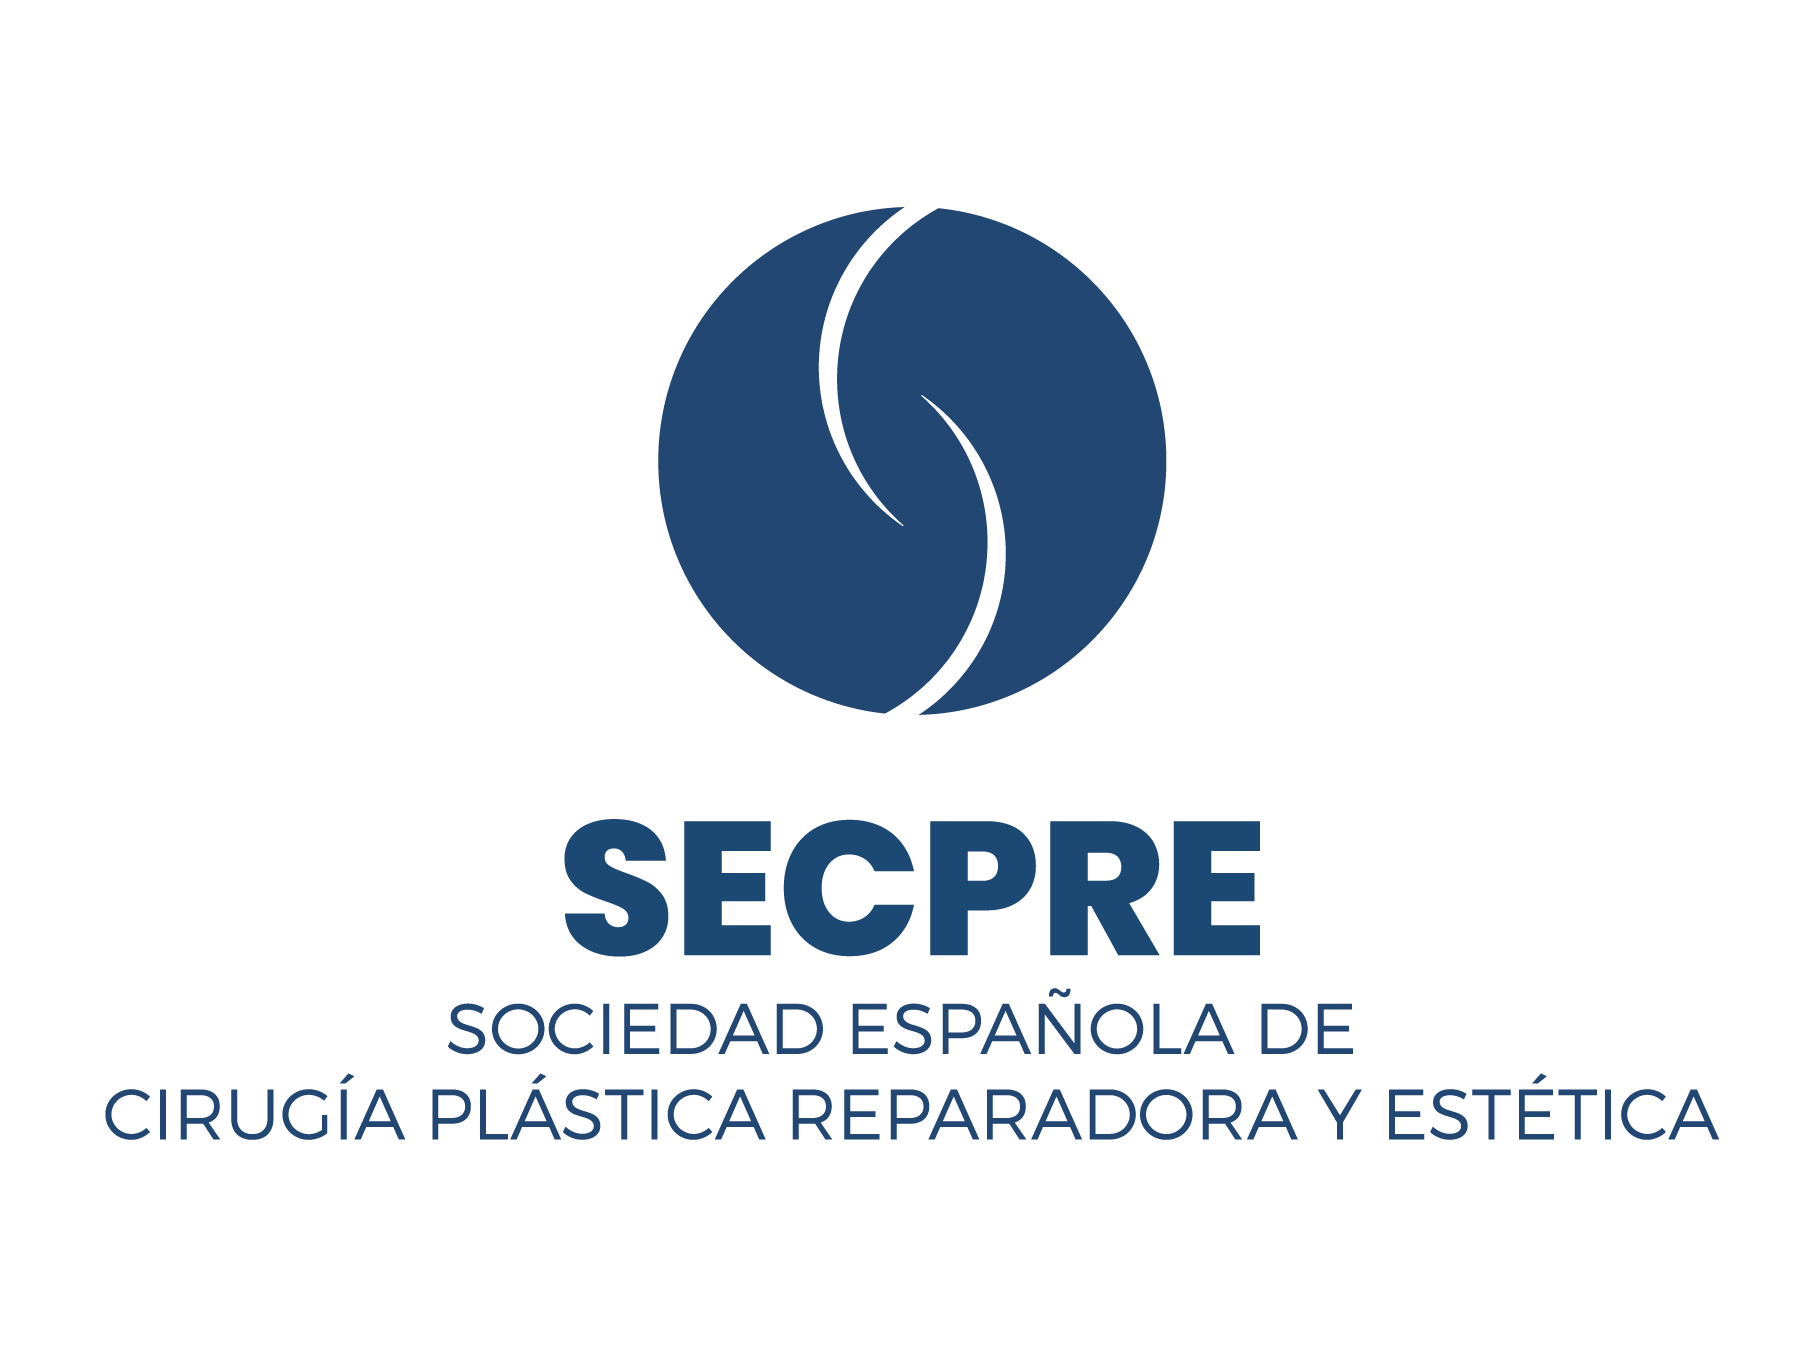 Icono y logotipo de SECPRE Sociedad Española de Cirugía Plástica Reparadora y Estética sobre fondo transparente.